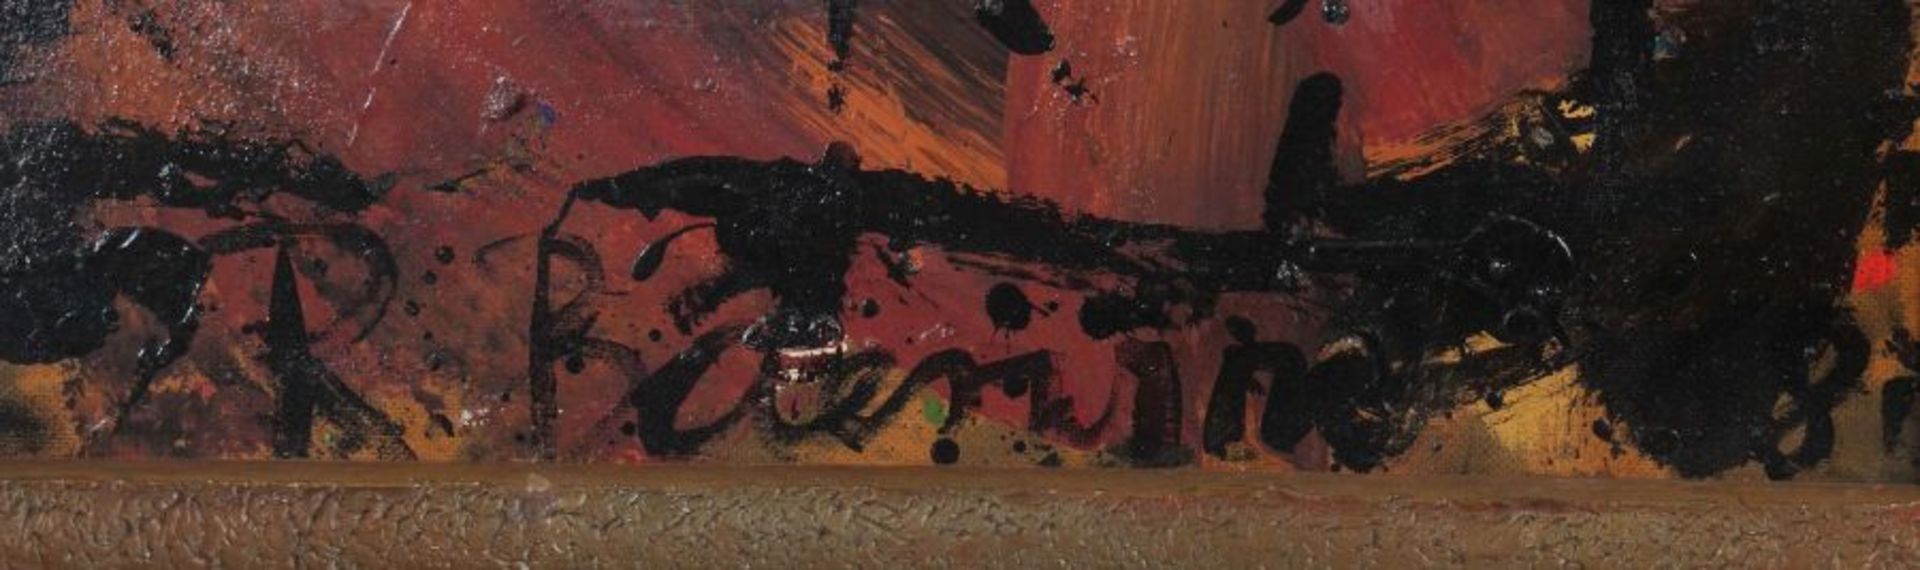 Baerwind, Rudi Mannheim 1910 - 1982 ebenda, deutscher Maler. "Informelle Komposition", abstrakte - Bild 3 aus 4